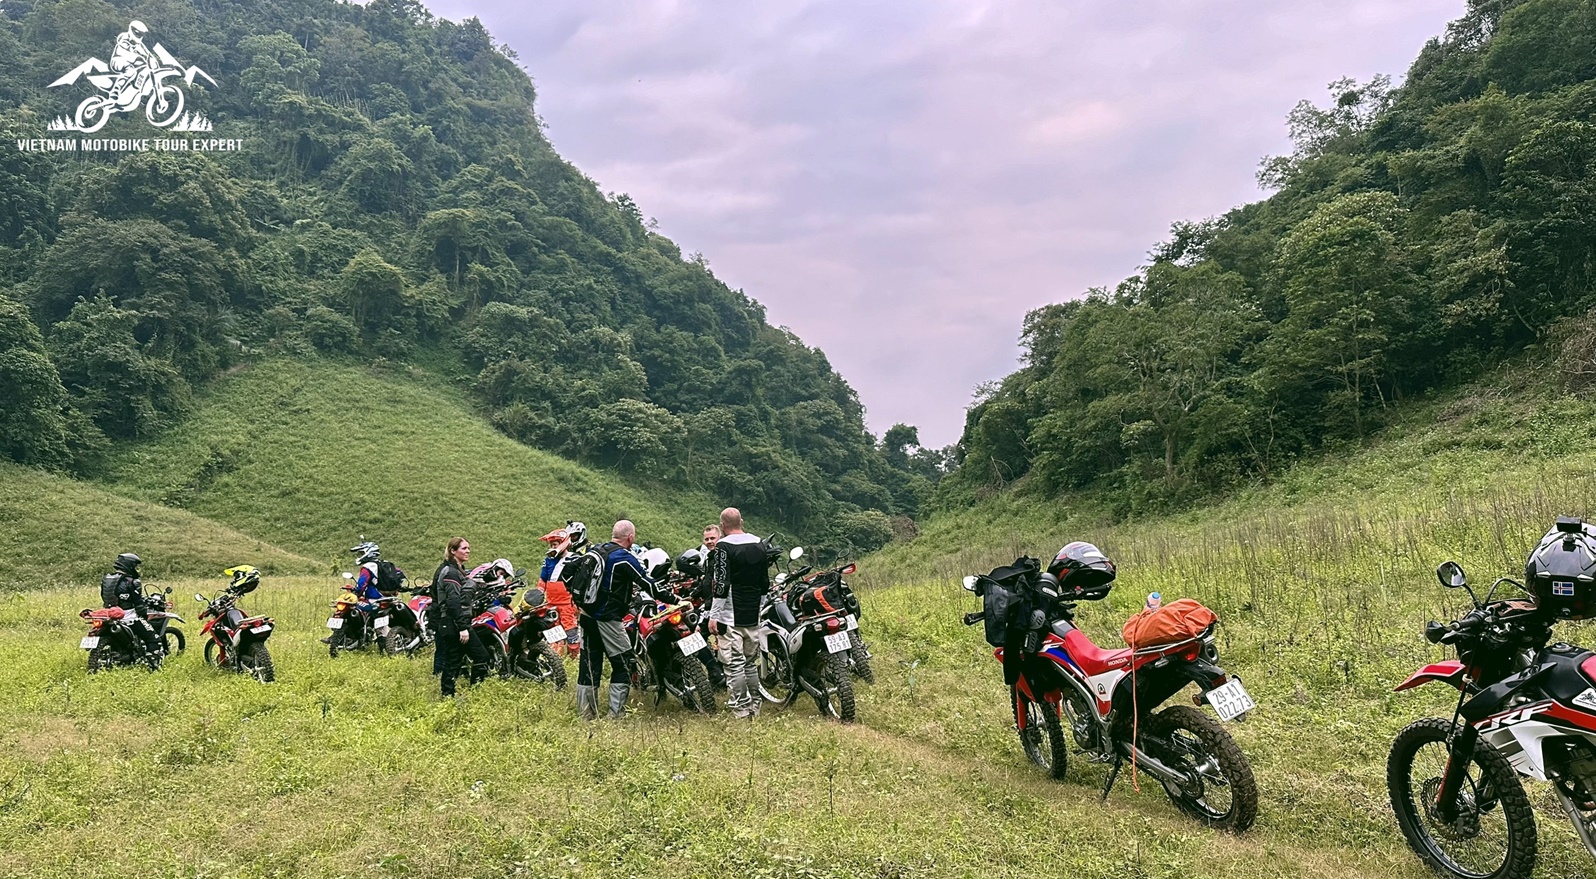 Northwest Vietnam Motorbike Ride